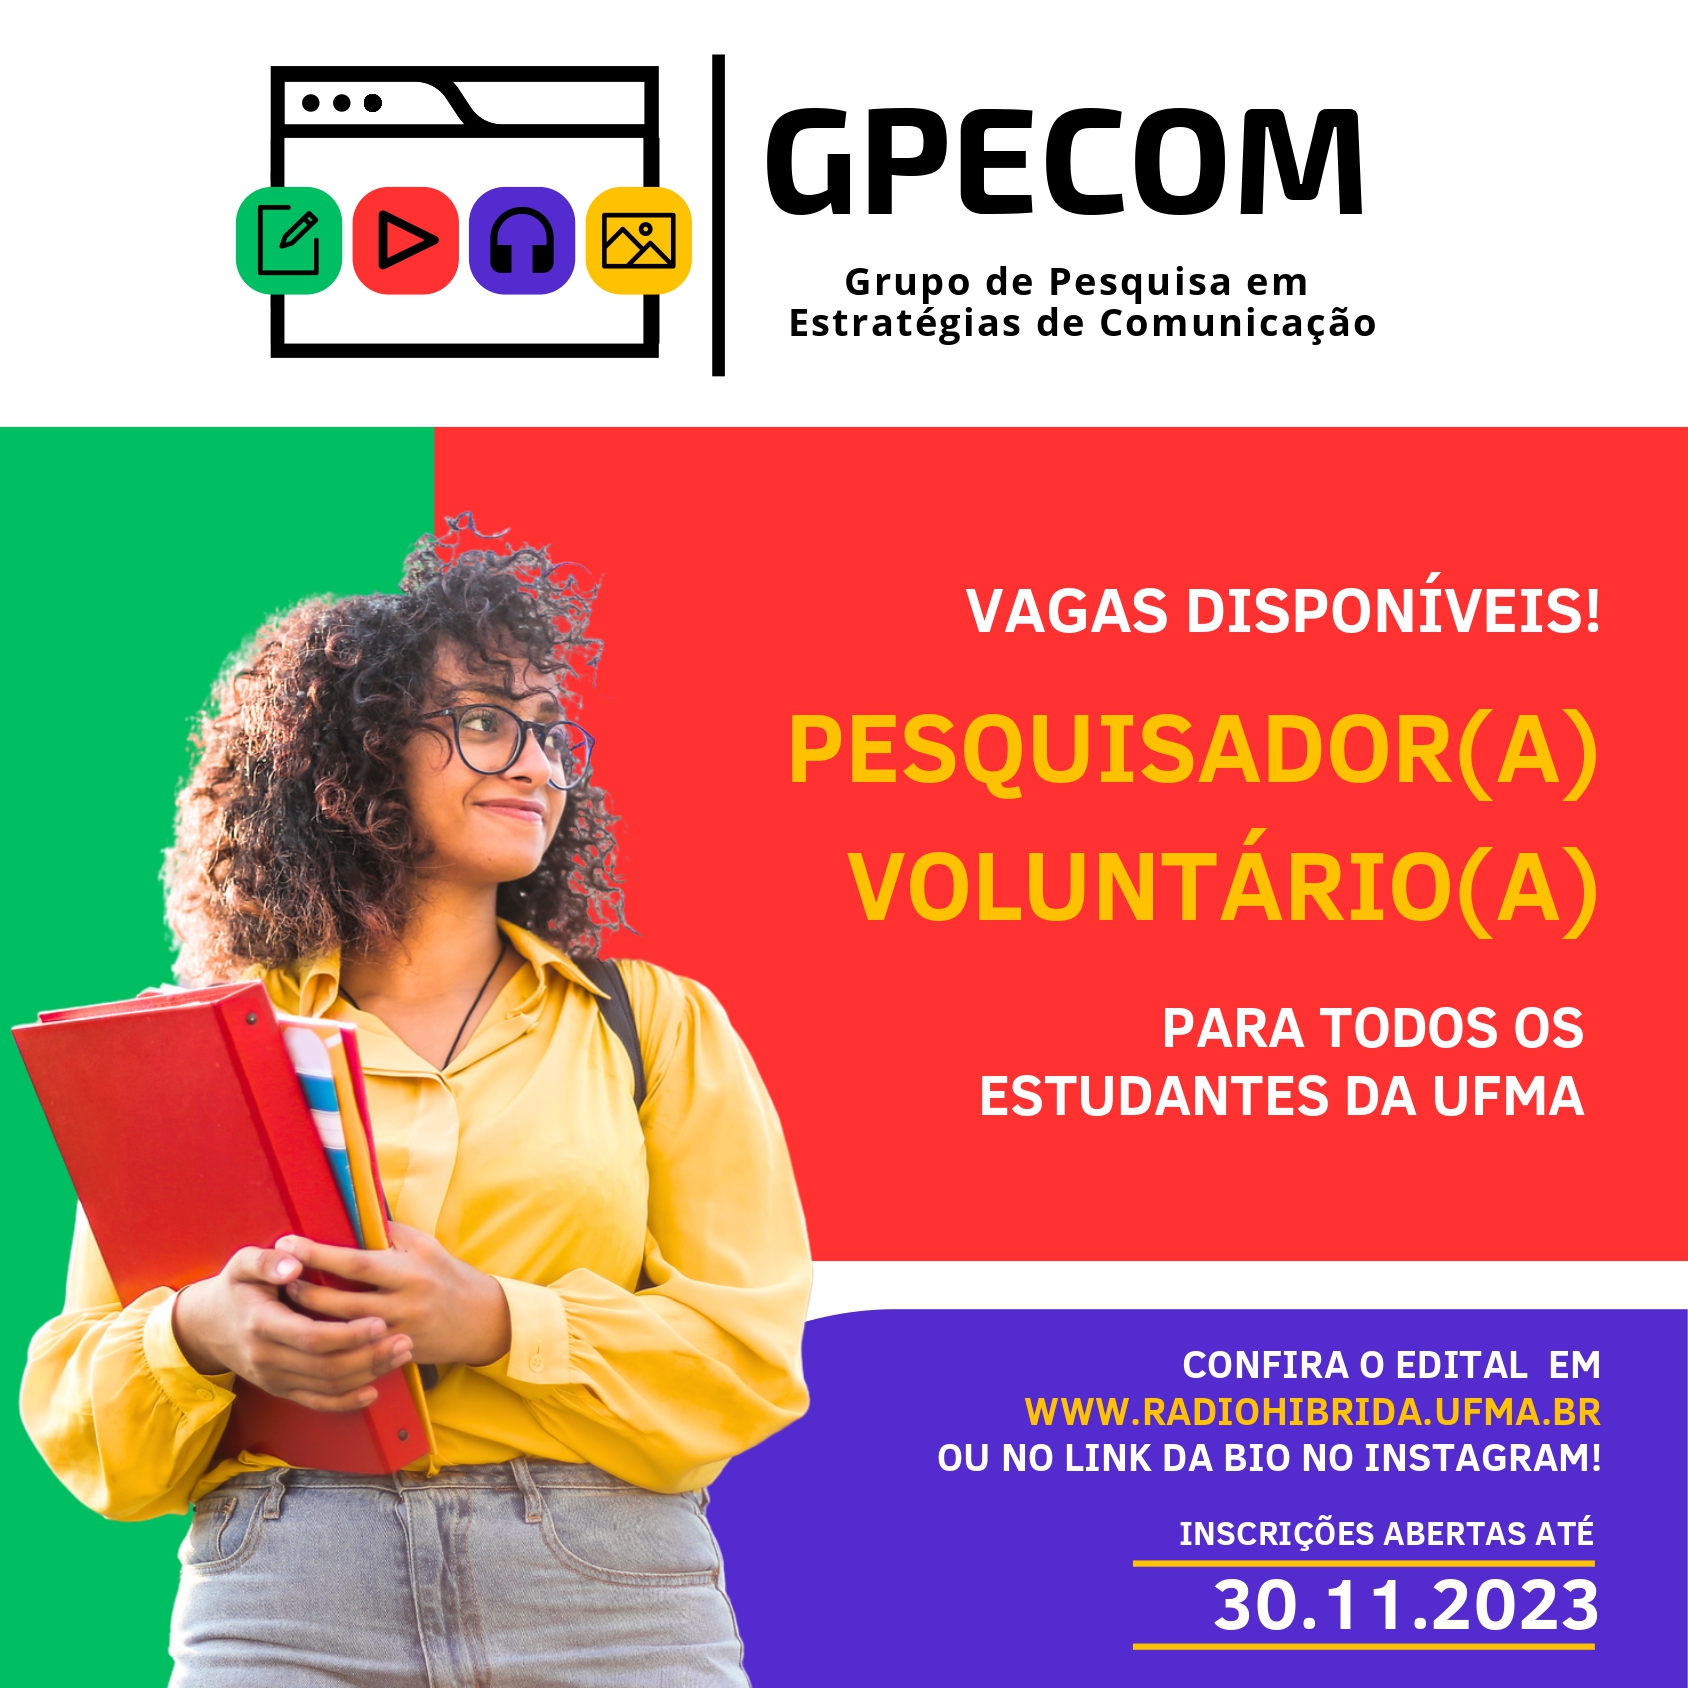 Grupo de Pesquisa em Estratégias de Comunicação (GPECOM) lança edital para vagas de pesquisador(a) voluntário(a)